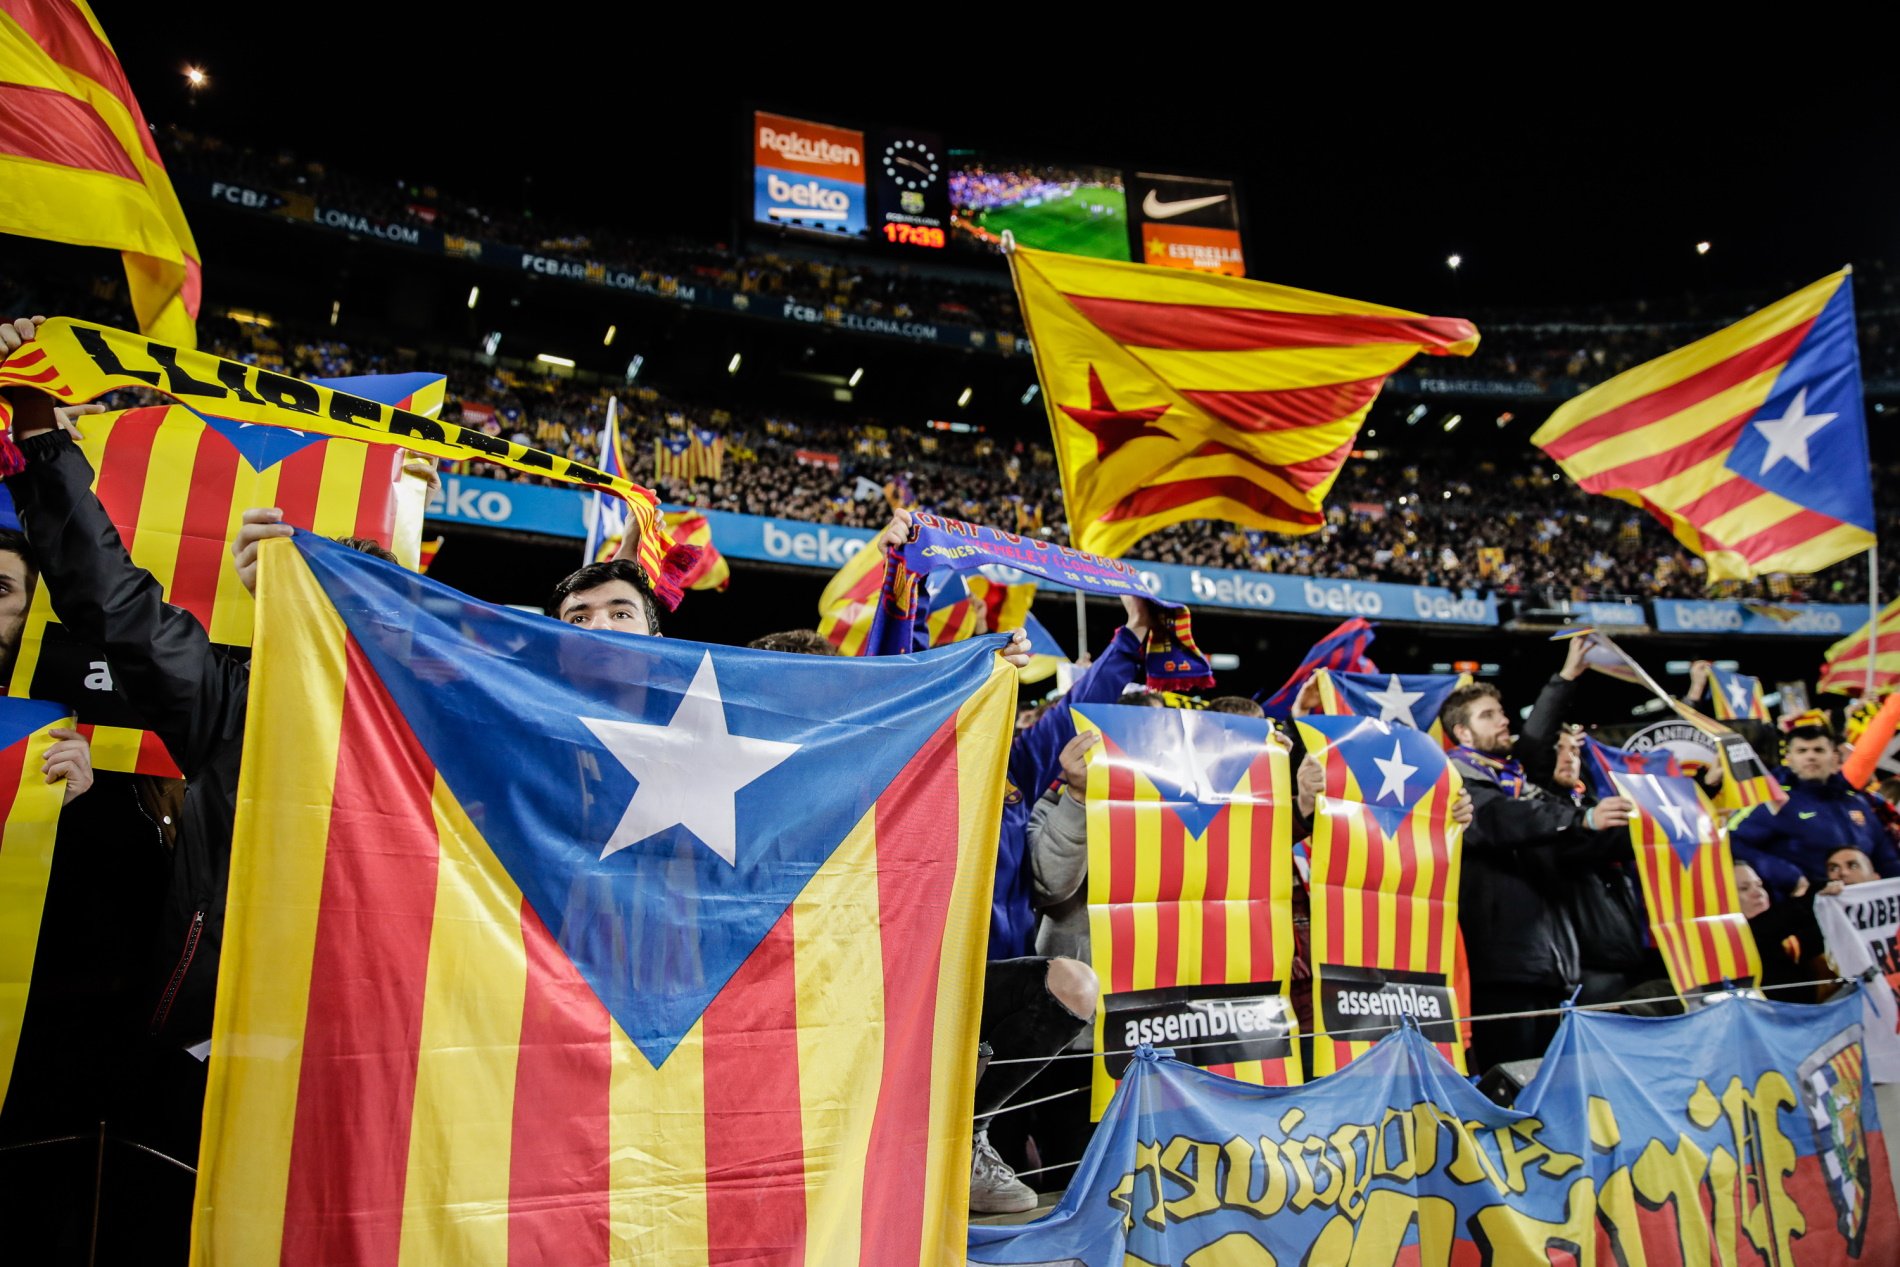 El Barça fa enrabiar el madridisme per partida doble: celebra les 6 copes amb 6 estelades